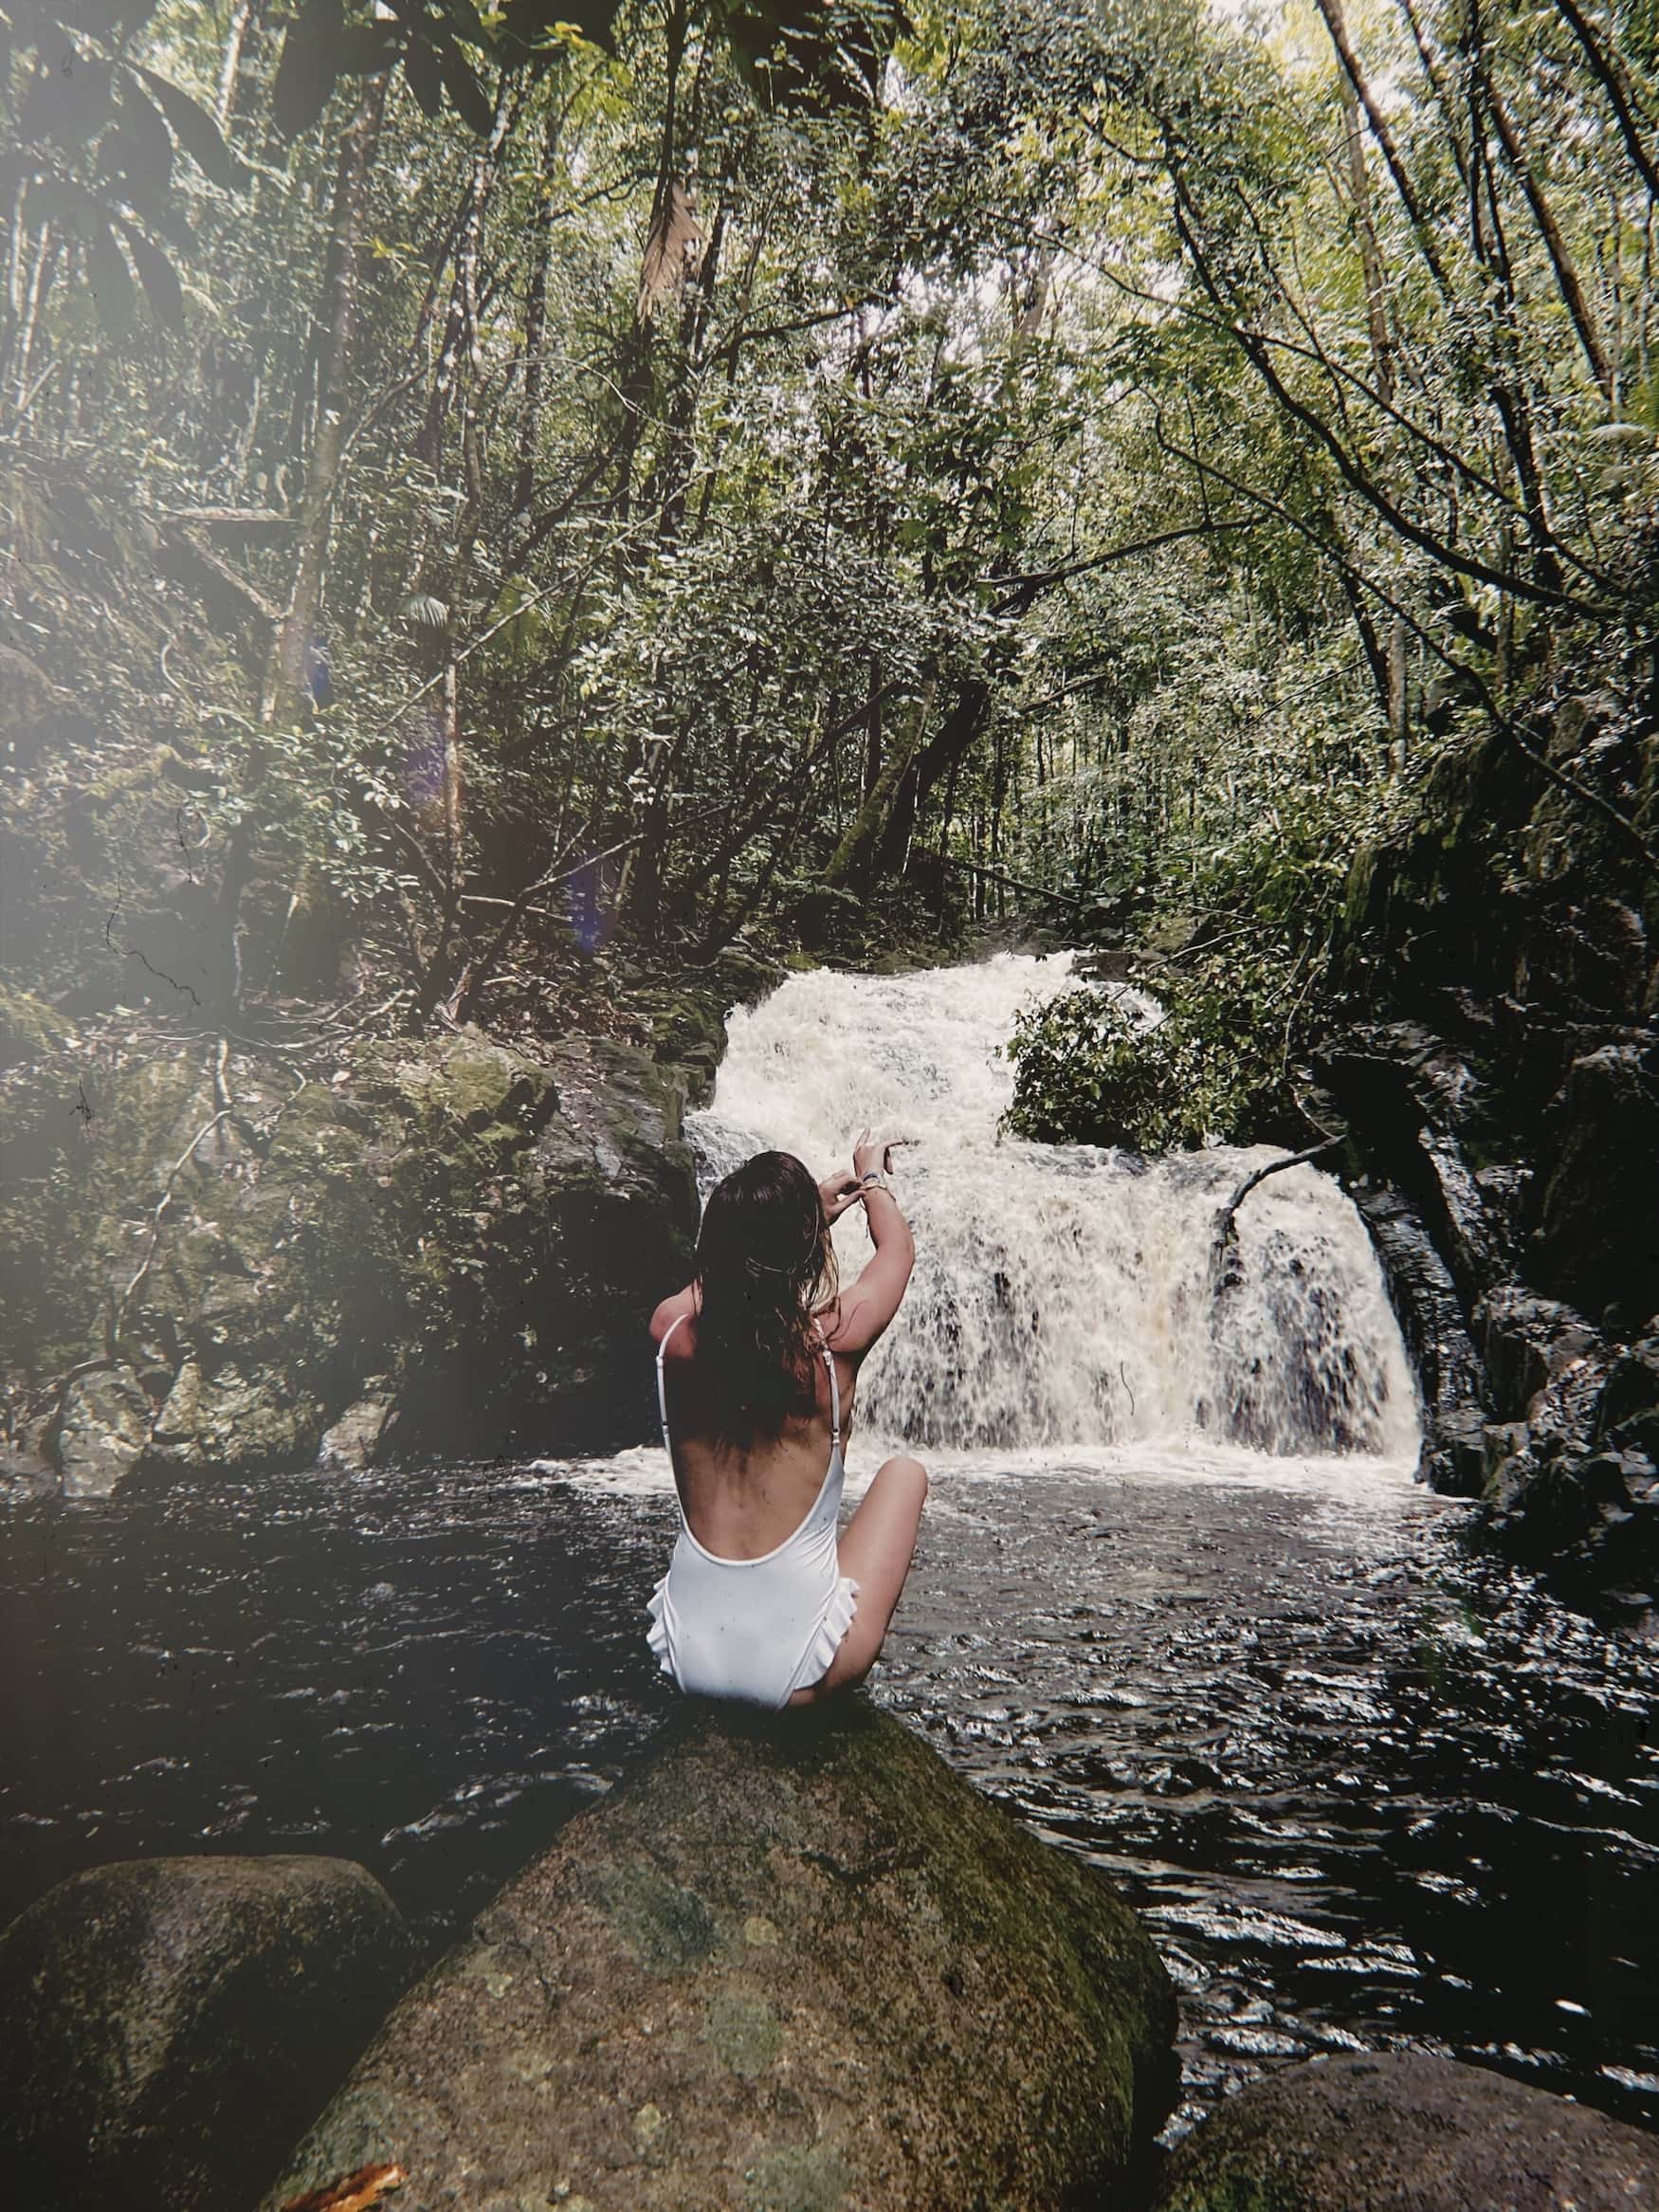 Frau am Wasserfall